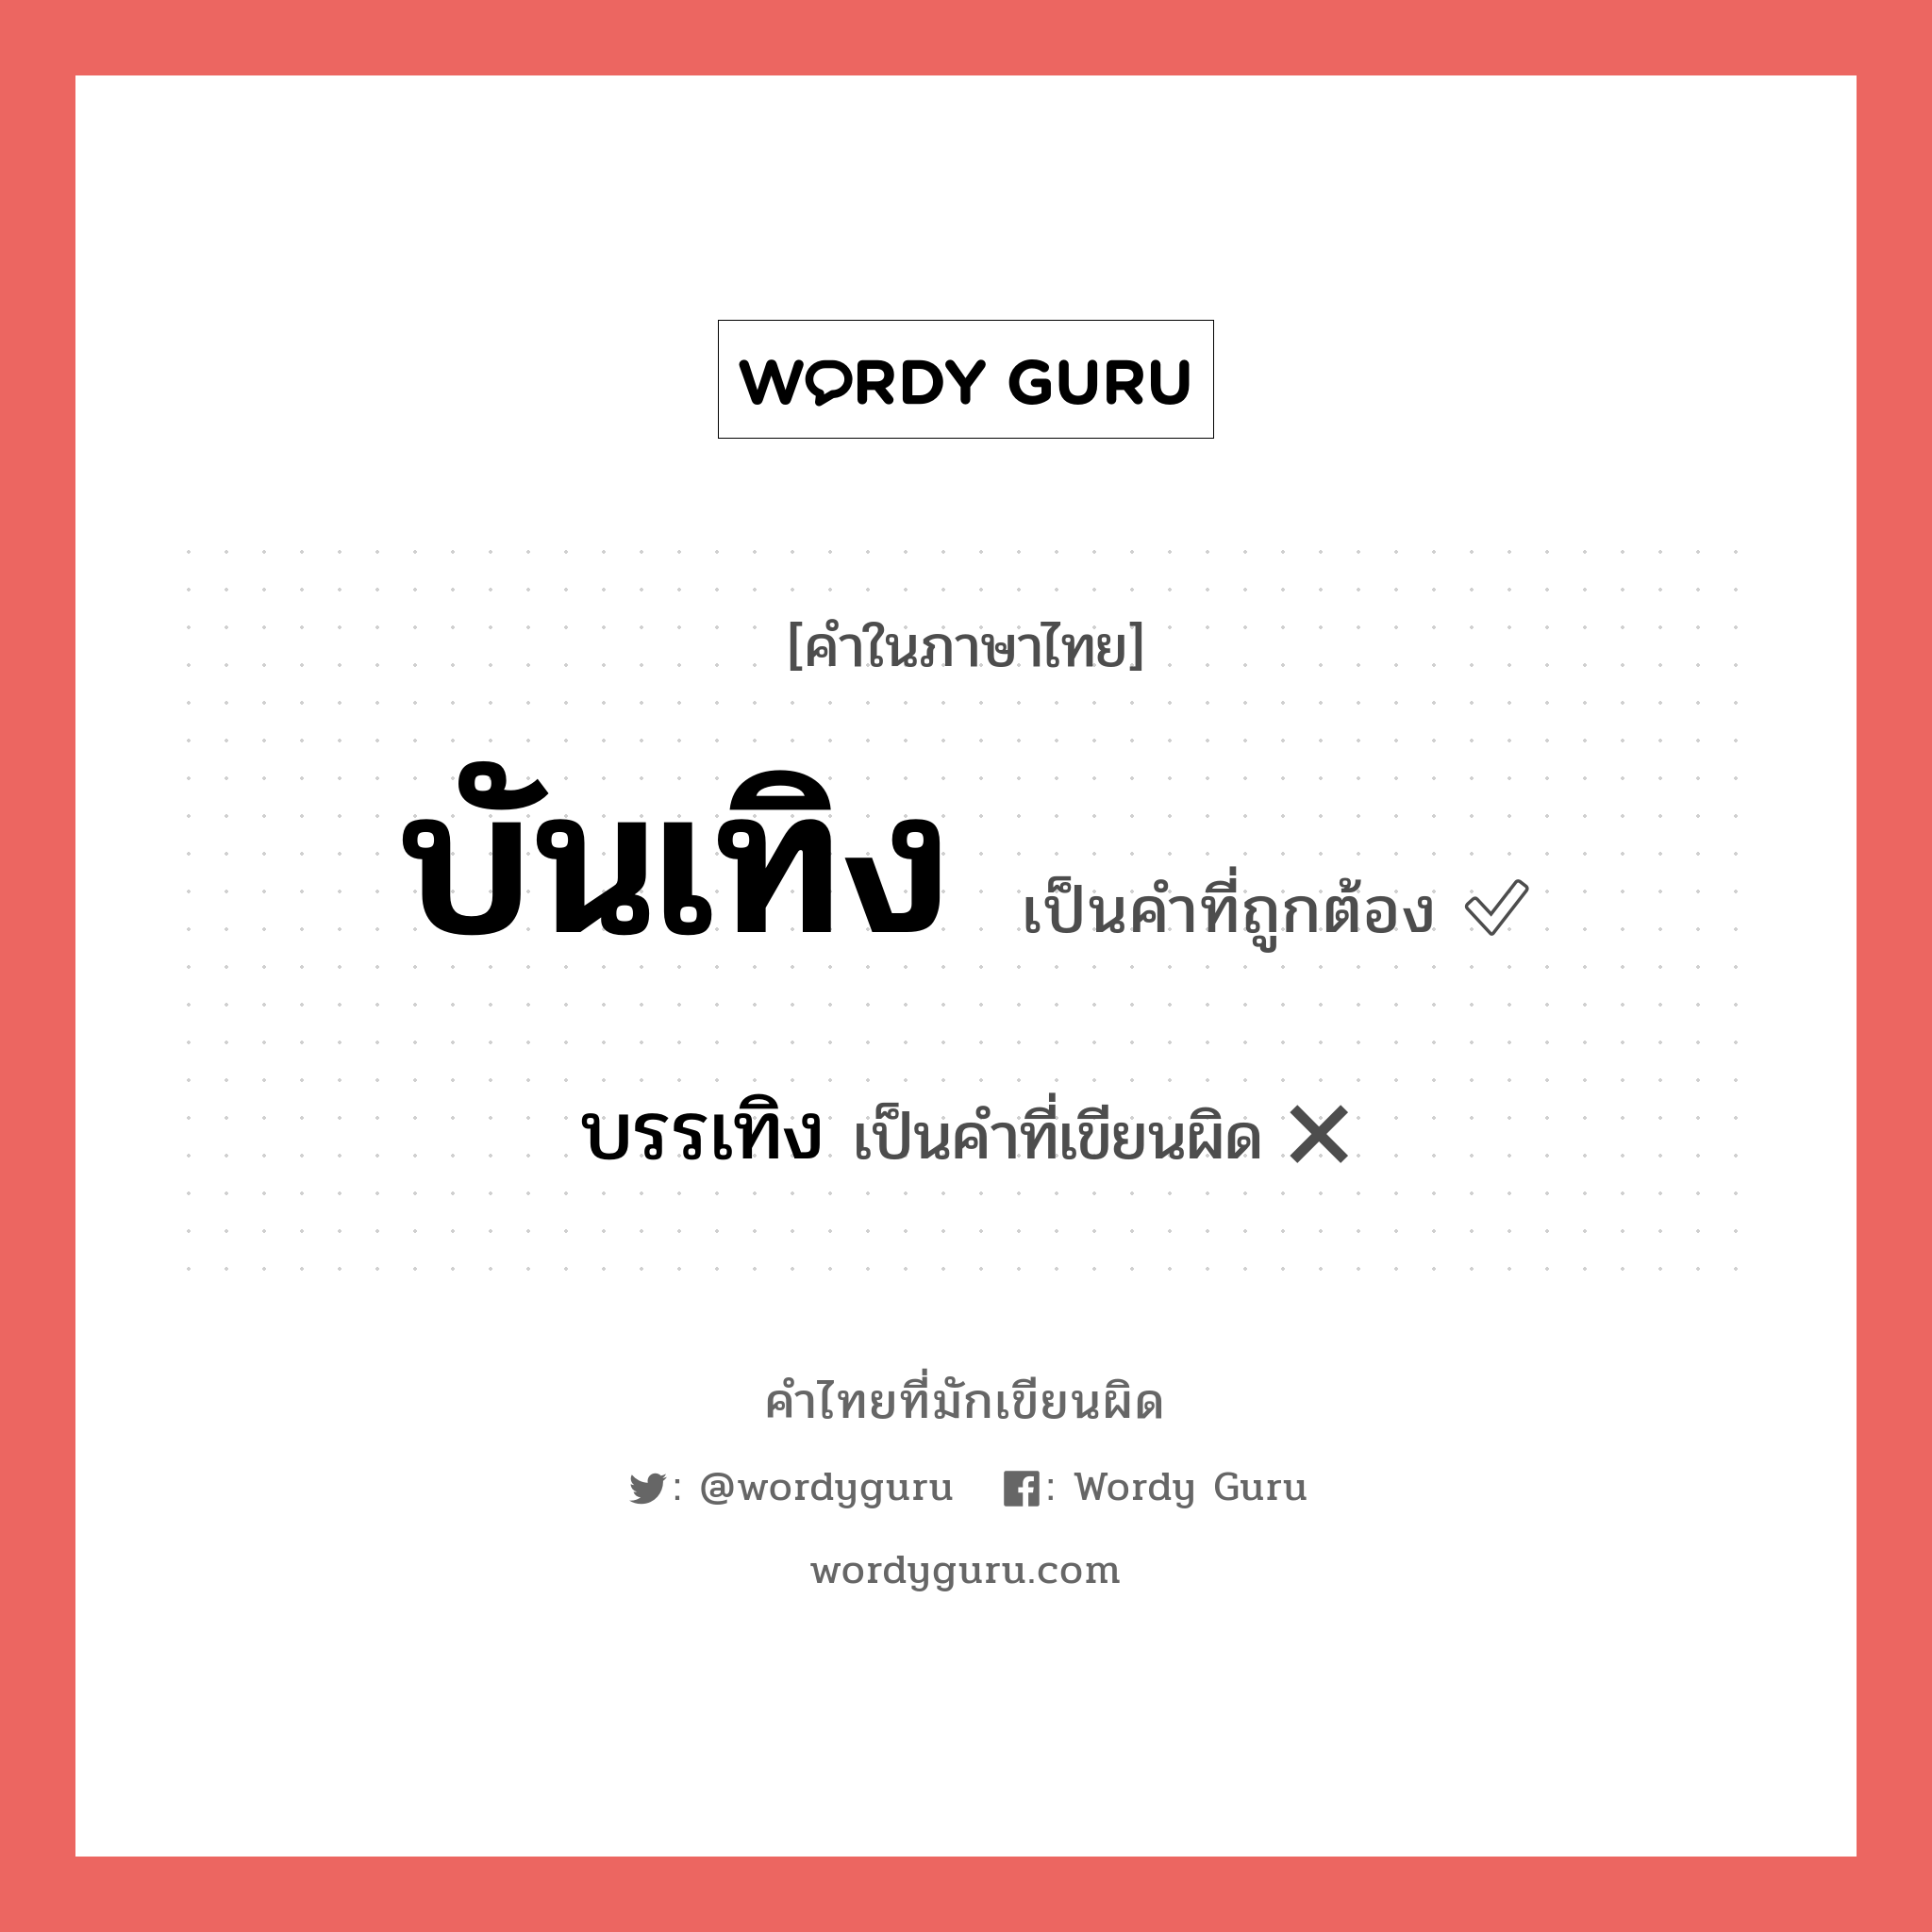 บันเทิง หรือ บรรเทิง คำไหนเขียนถูก?, คำในภาษาไทยที่มักเขียนผิด บันเทิง คำที่ผิด ❌ บรรเทิง